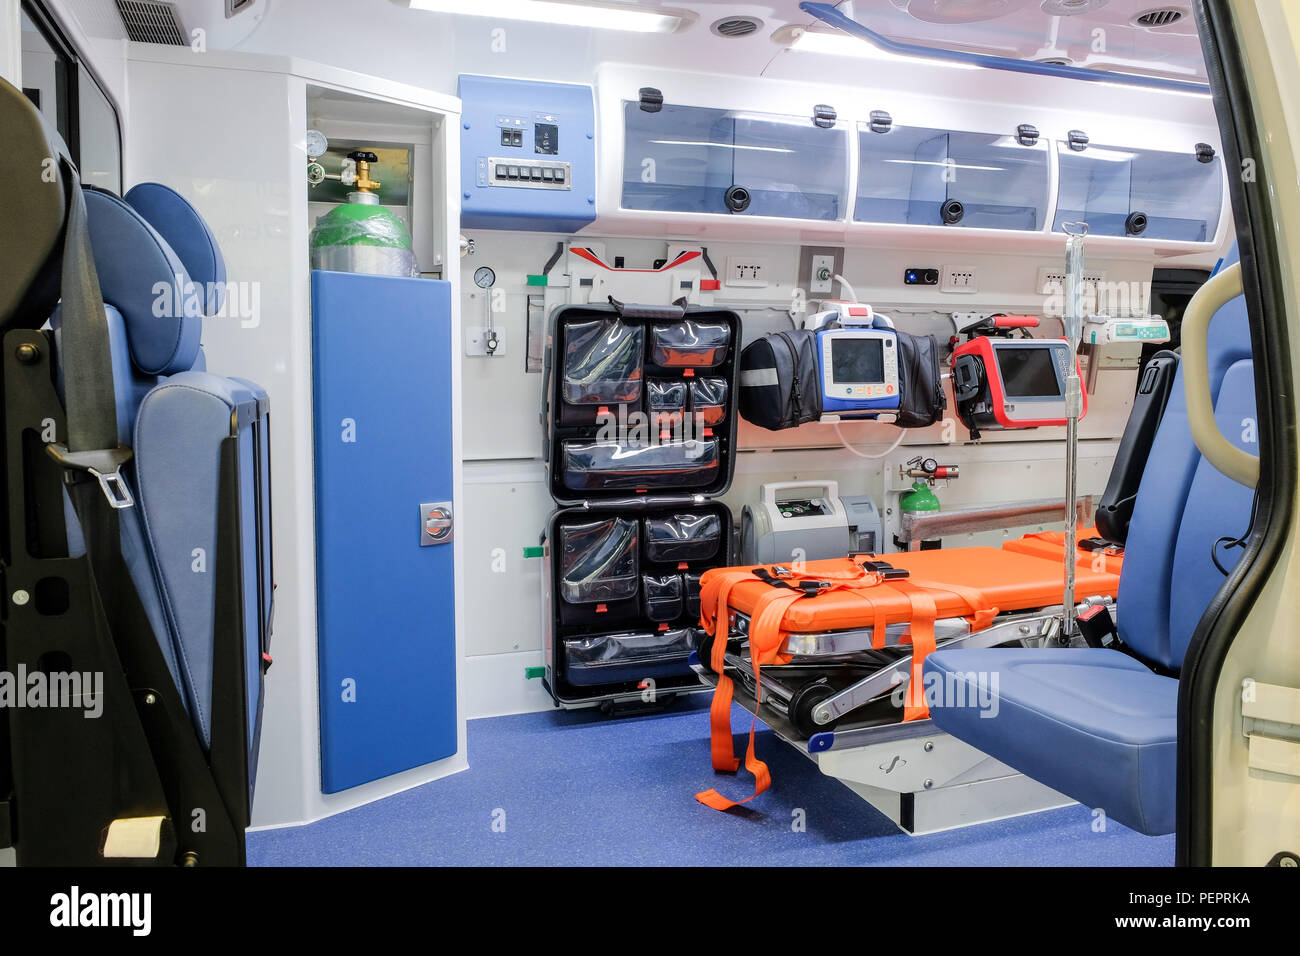 All'interno di un ambulanza con attrezzature mediche per aiutare i pazienti prima della consegna all'ospedale. Foto Stock